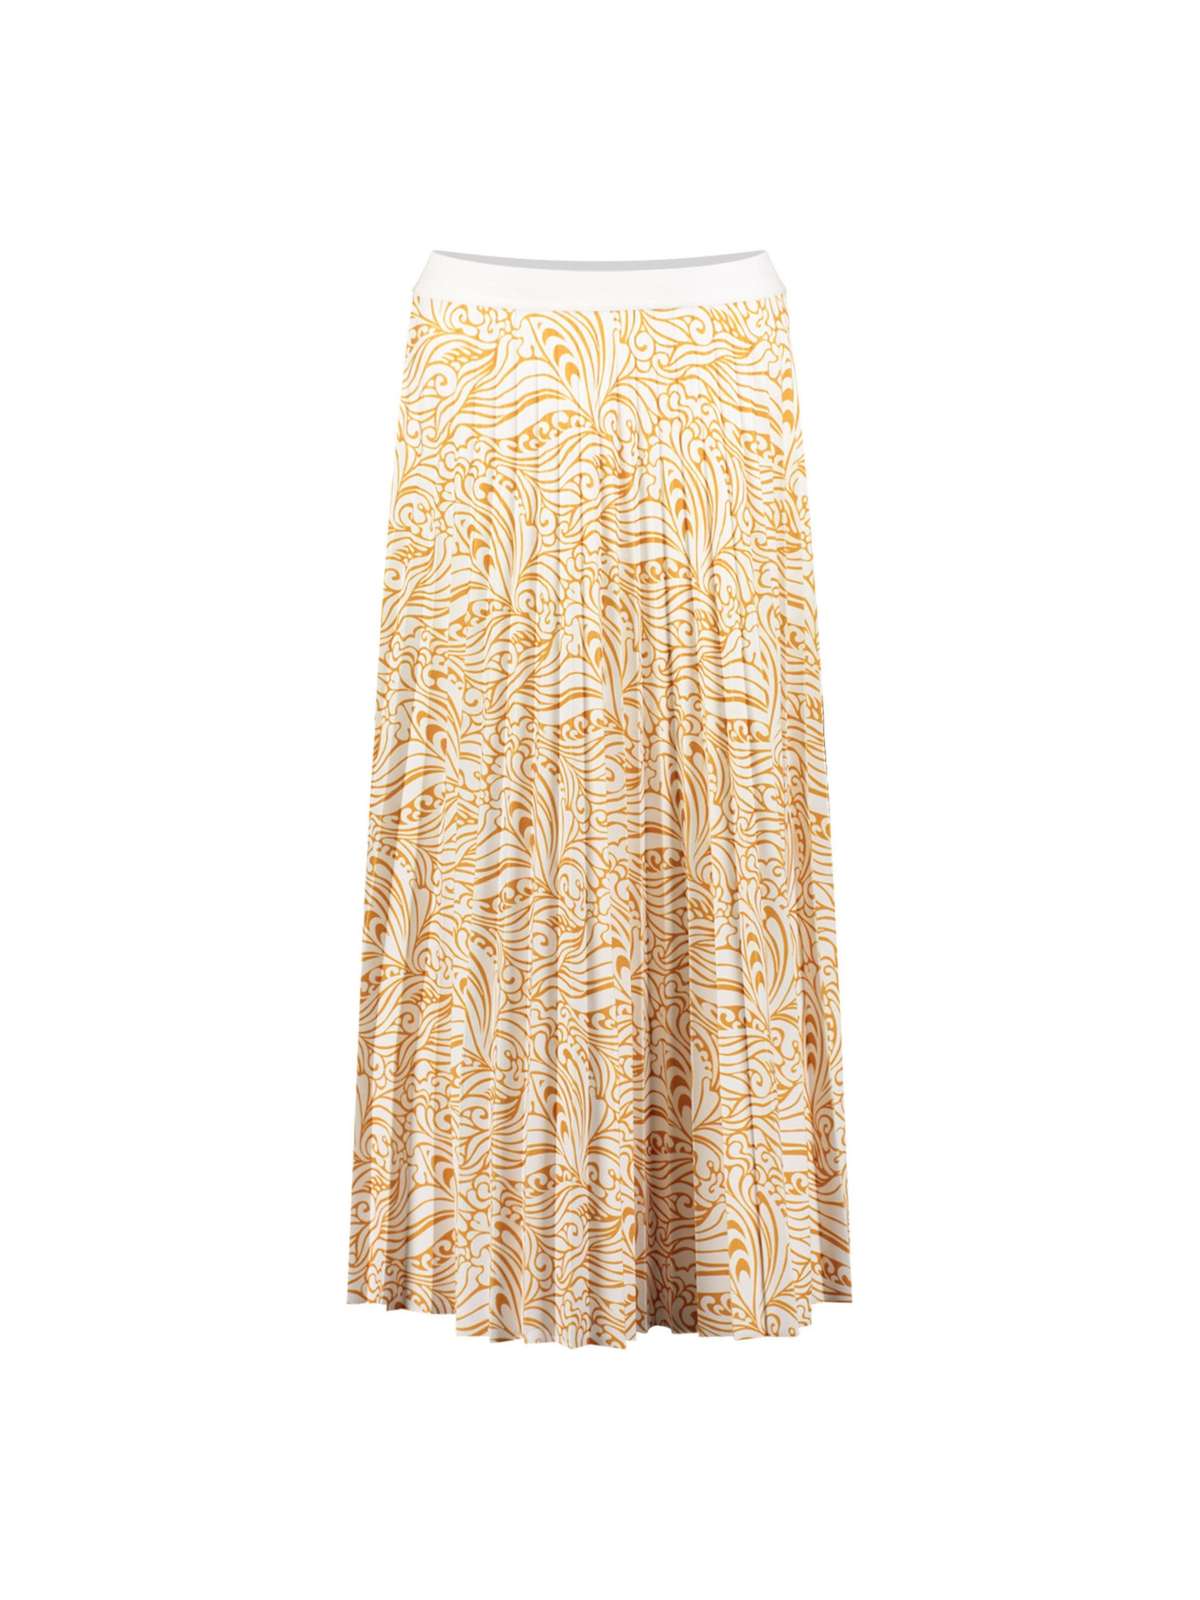 Плиссированная юбка плиссированная юбка с принтом пейсли